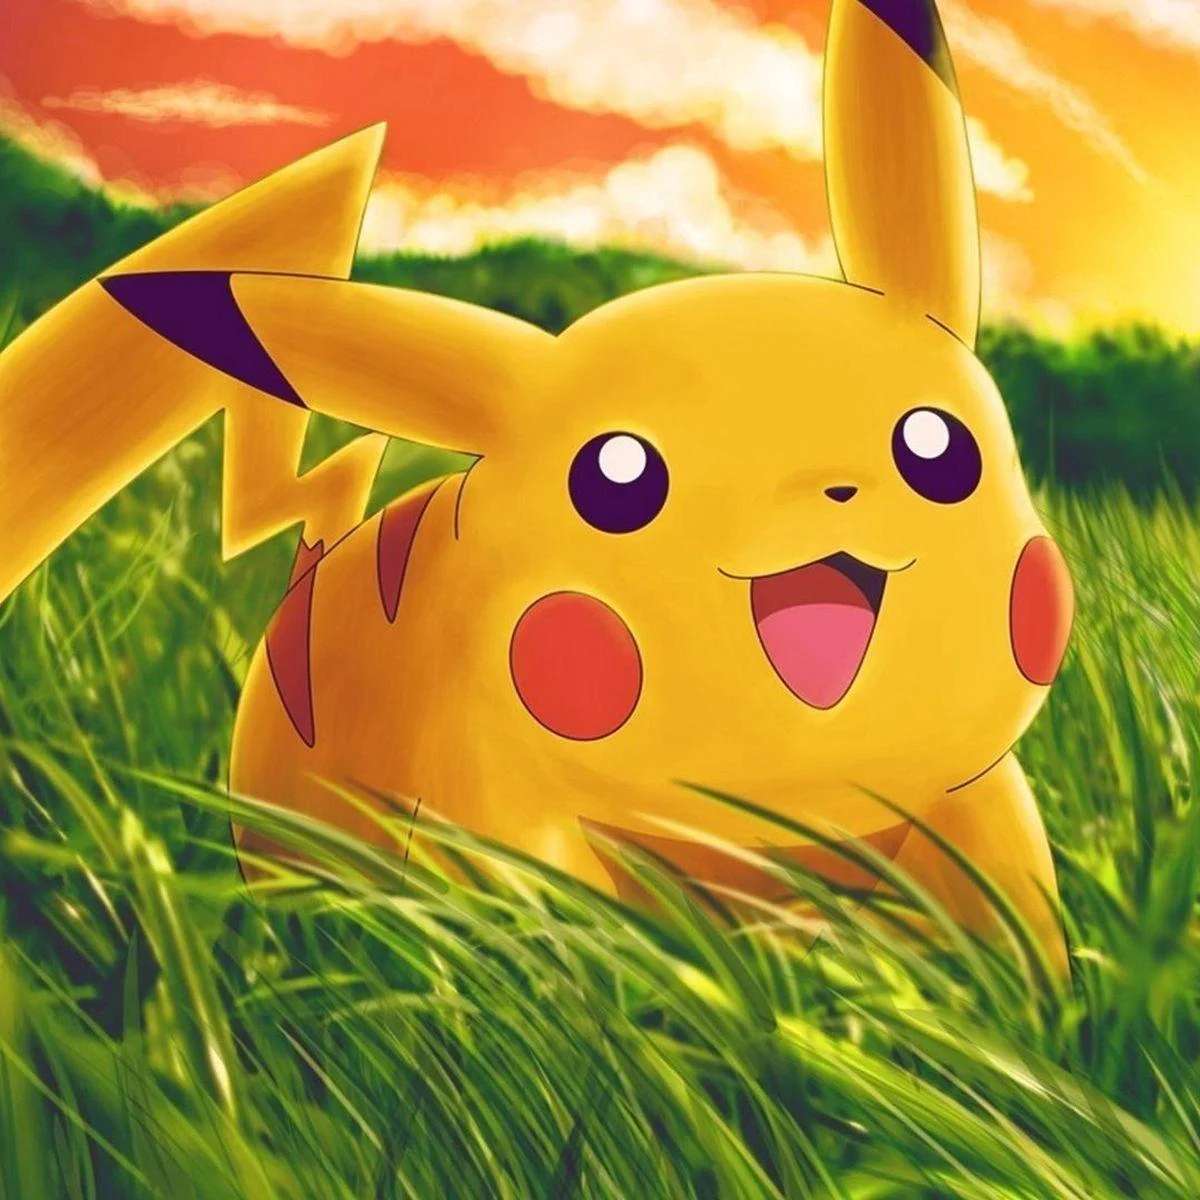 Pikachu (Pokémon) online puzzel